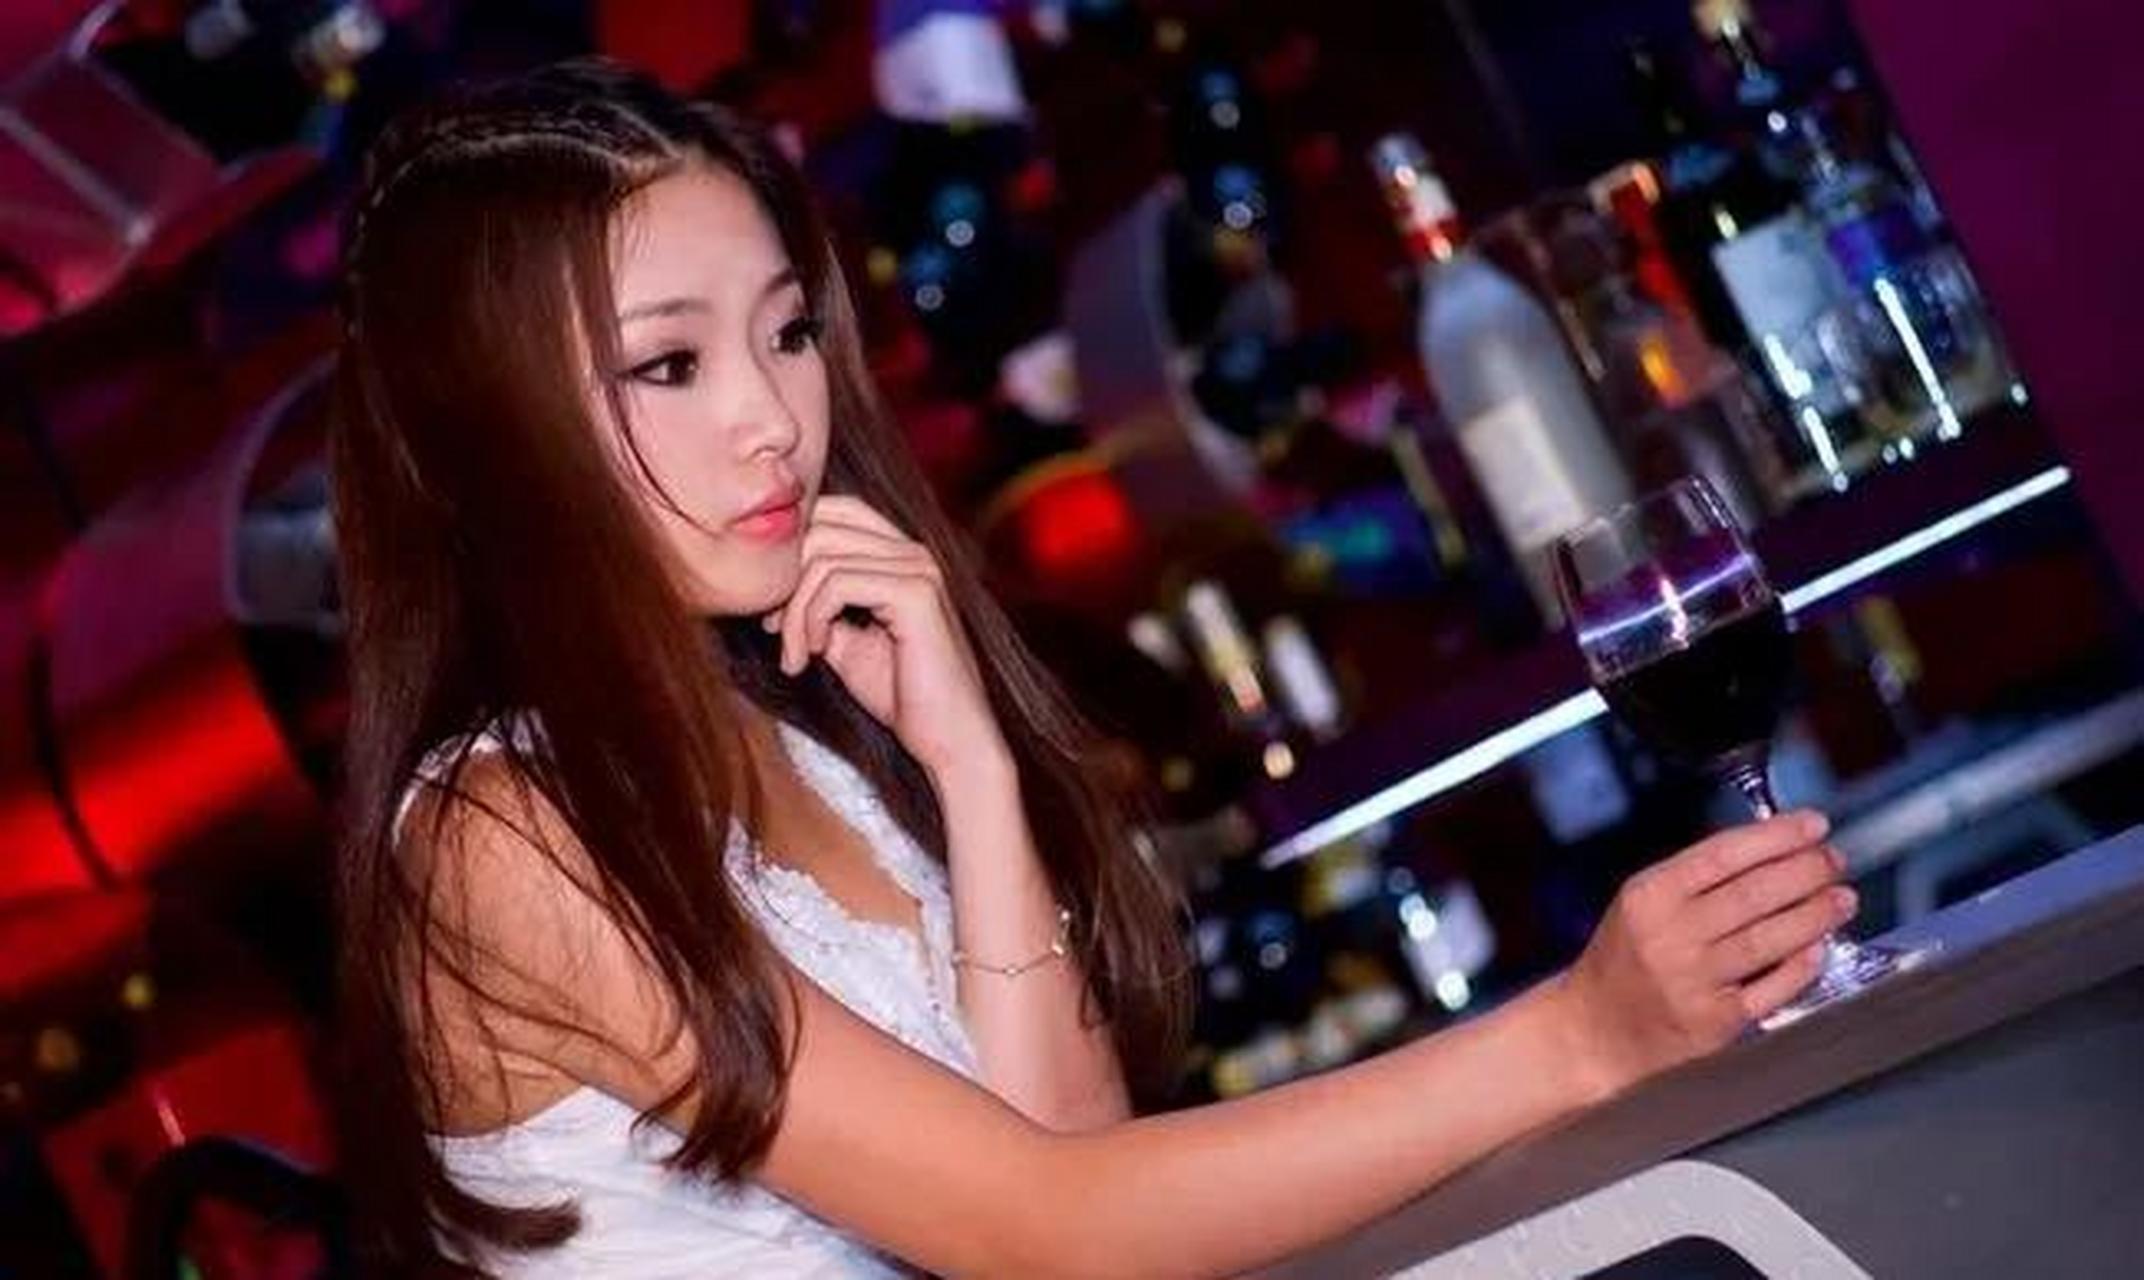 上海发生了一起令人窒息的强j案,一名男子花费两千元包下一名陪酒女